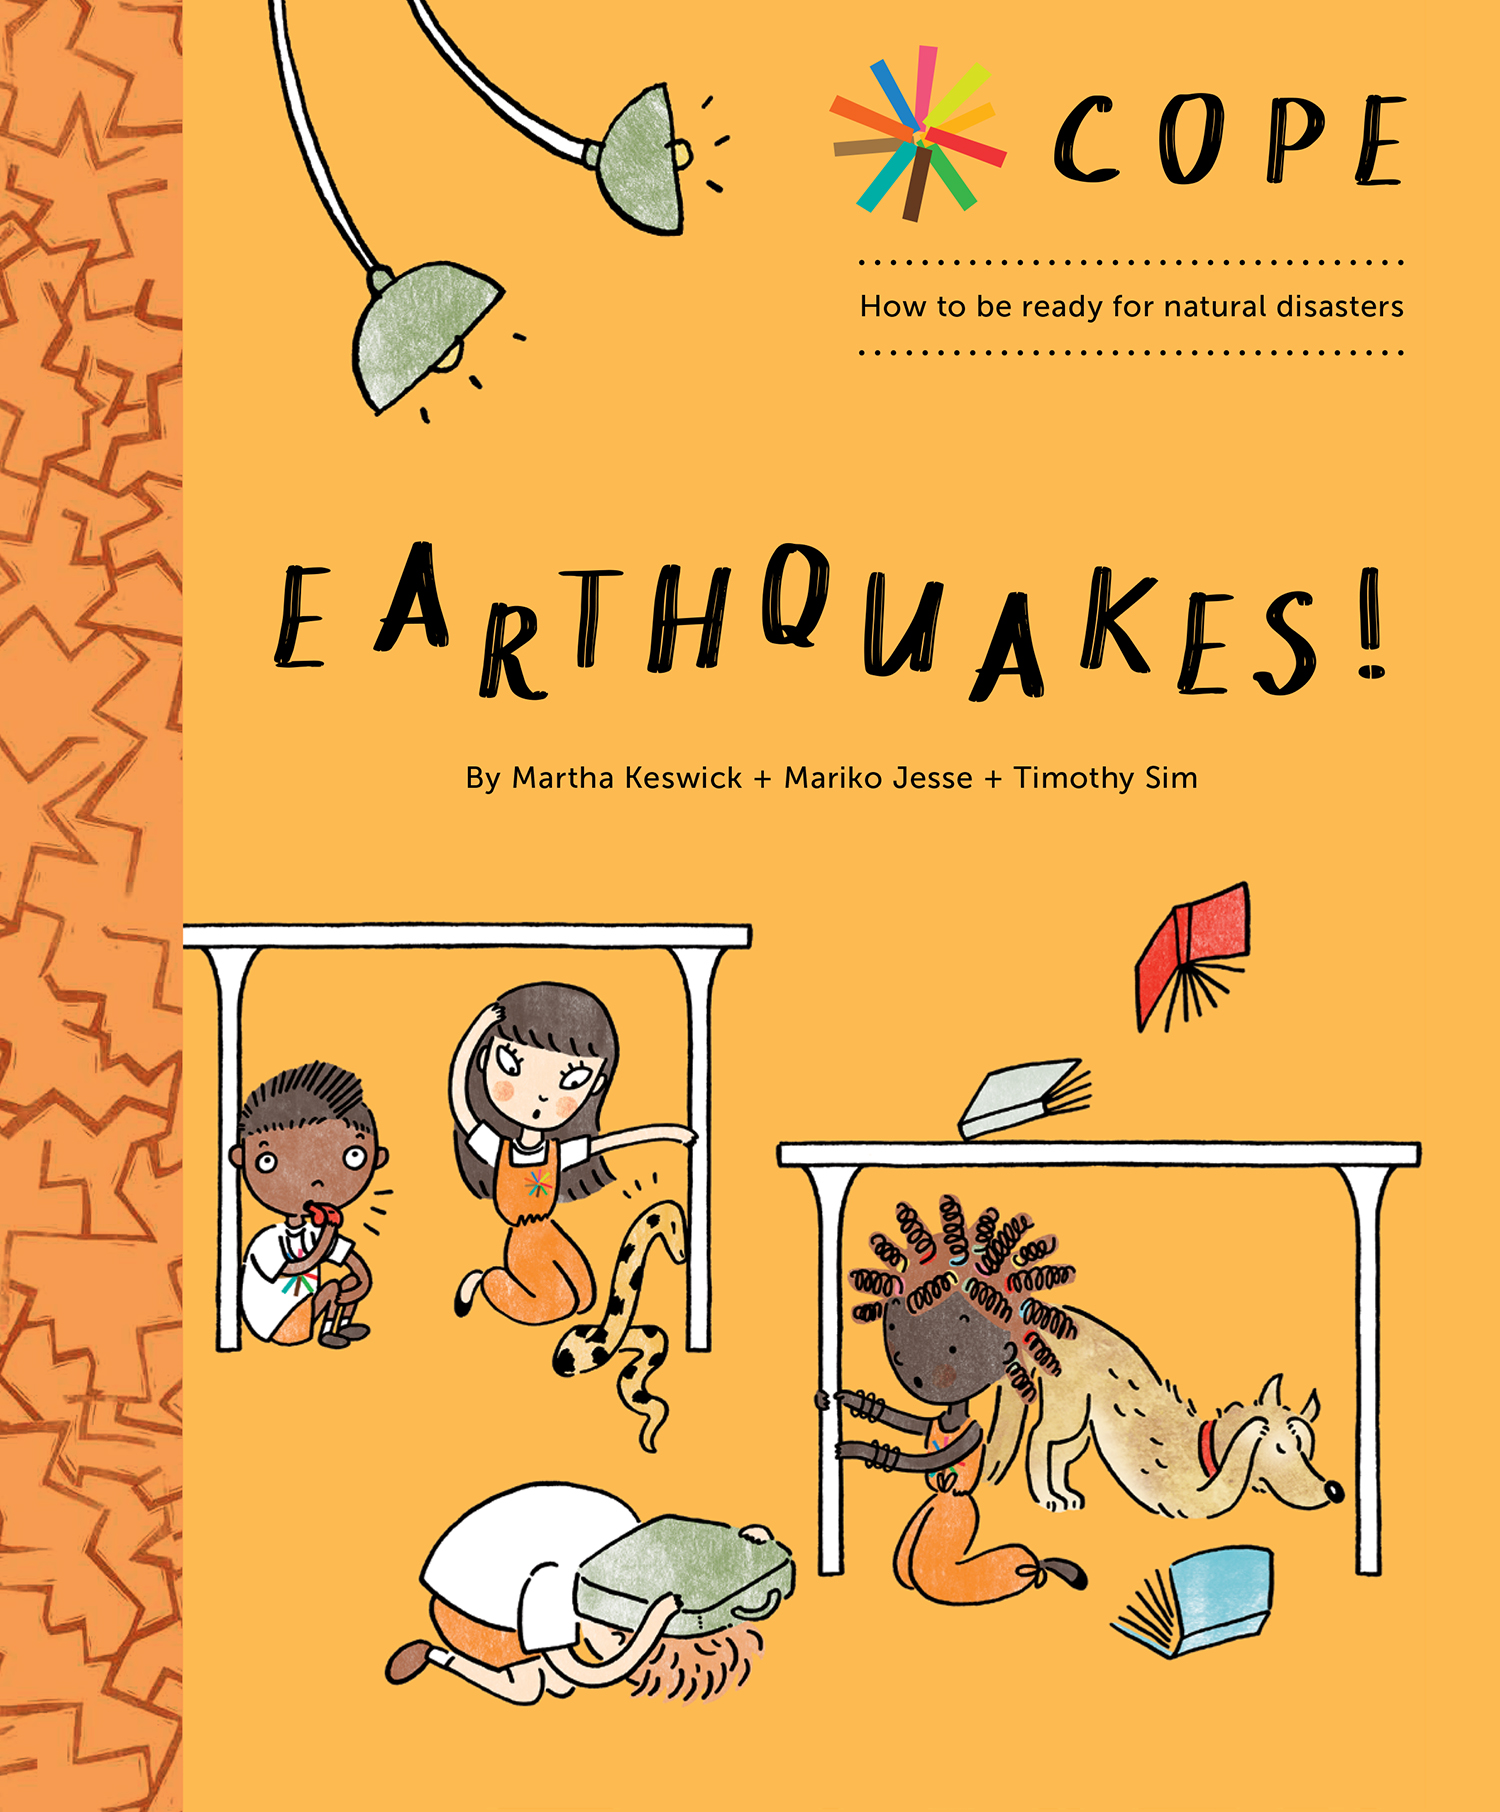 COPE Earthquake book